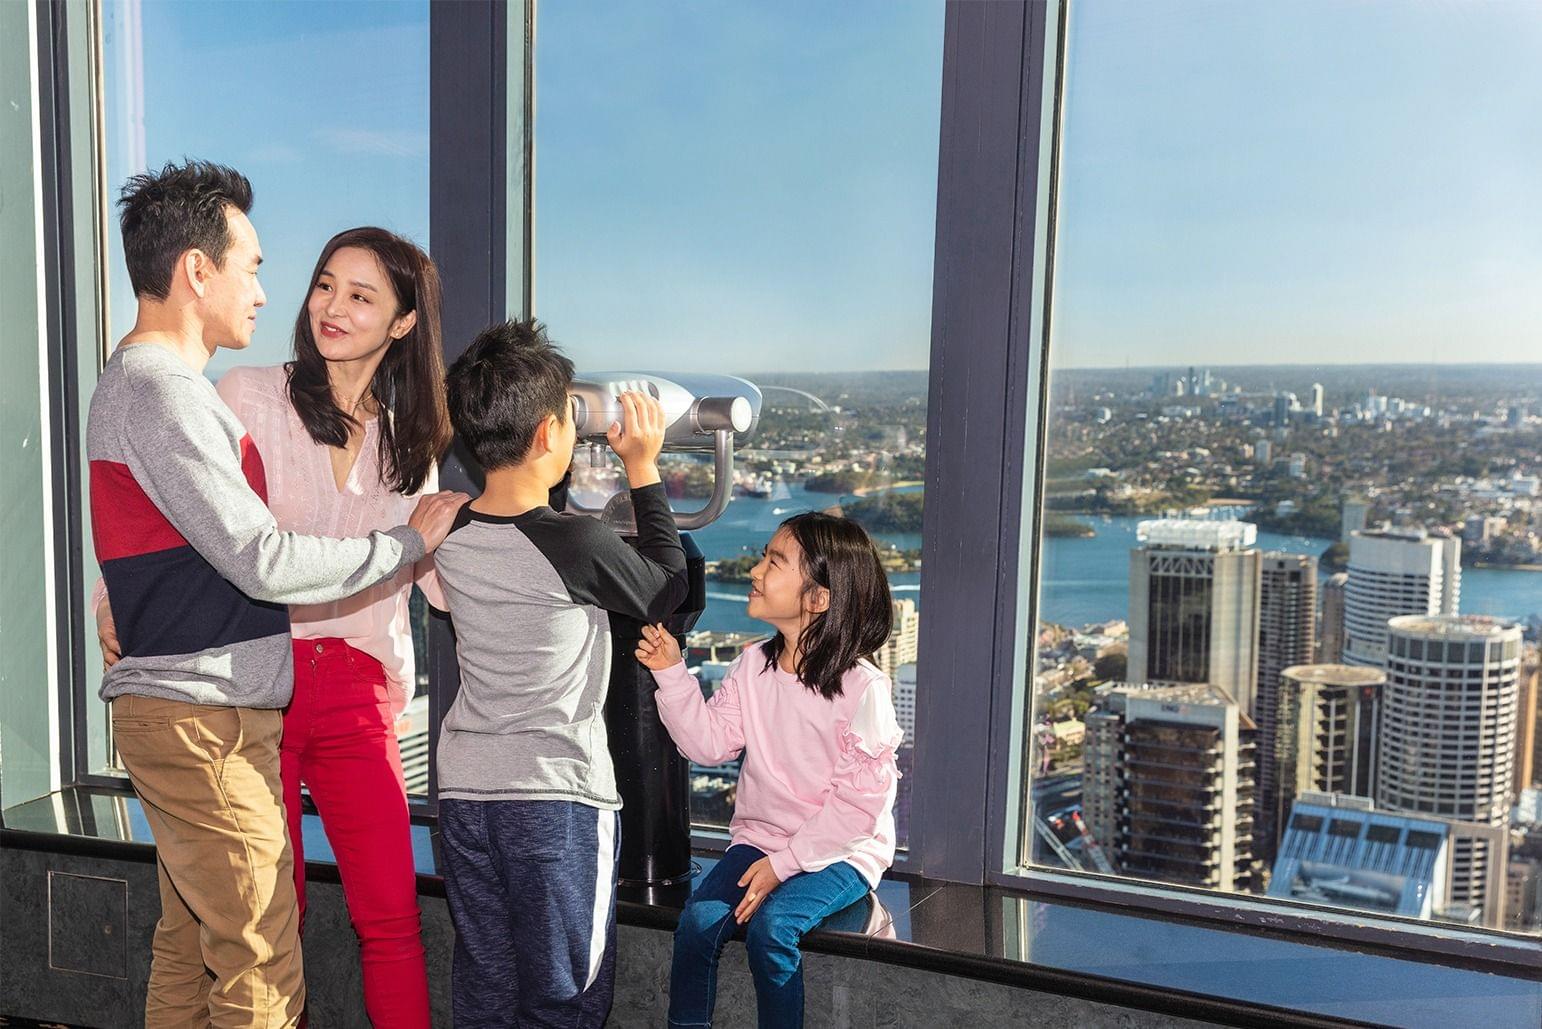 Sydney Tower Eye Tickets